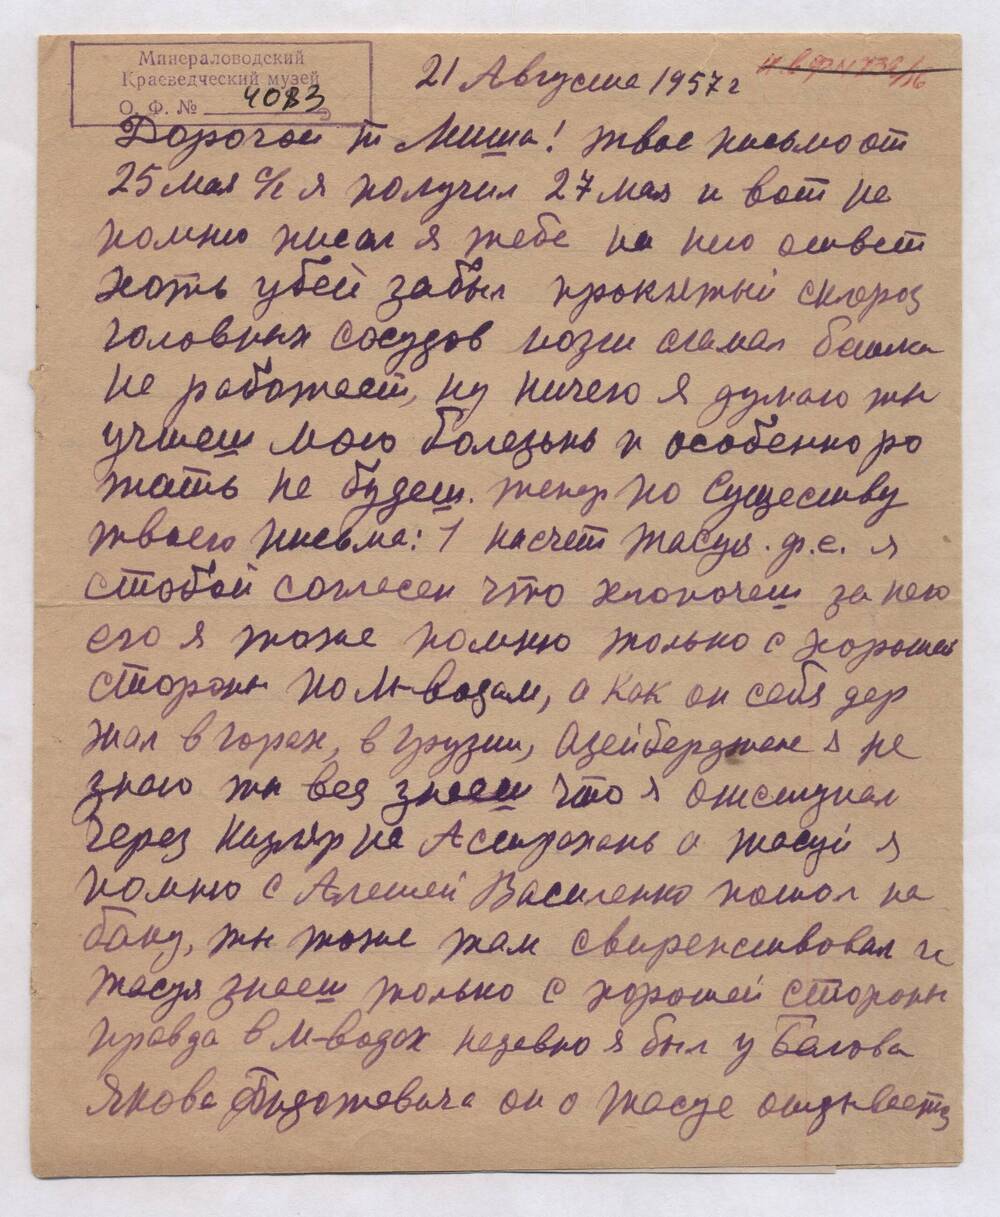 Письмо Бородыни Г.С. Мише от 21 августа 1957 года.